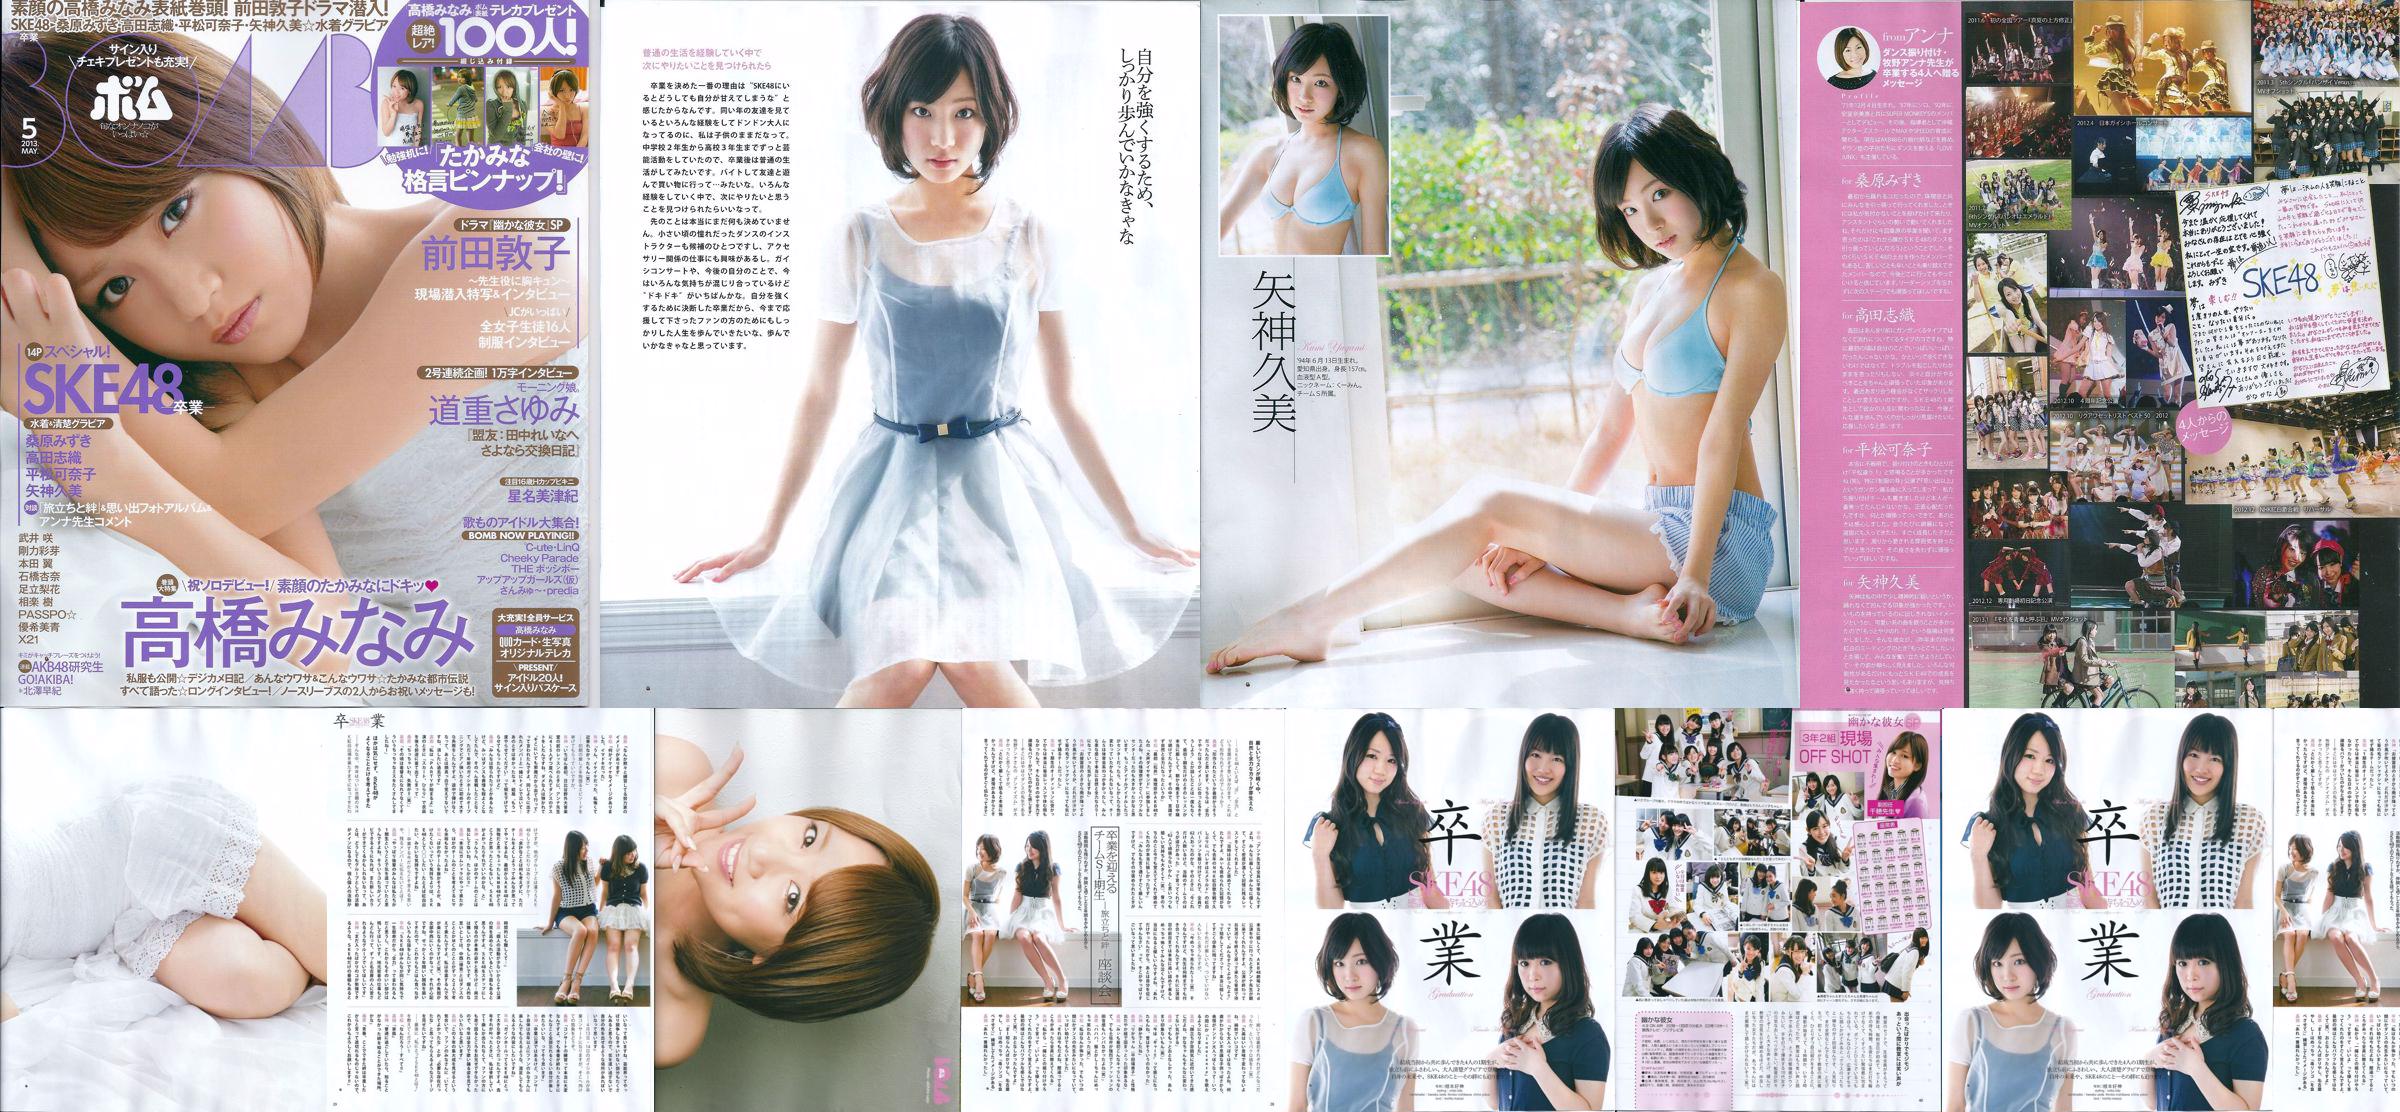 [Bomb Magazine] 2013 No.05 Kumi Yagami Minami Takahashi Atsuko Maeda Photo No.9881bd Page 6